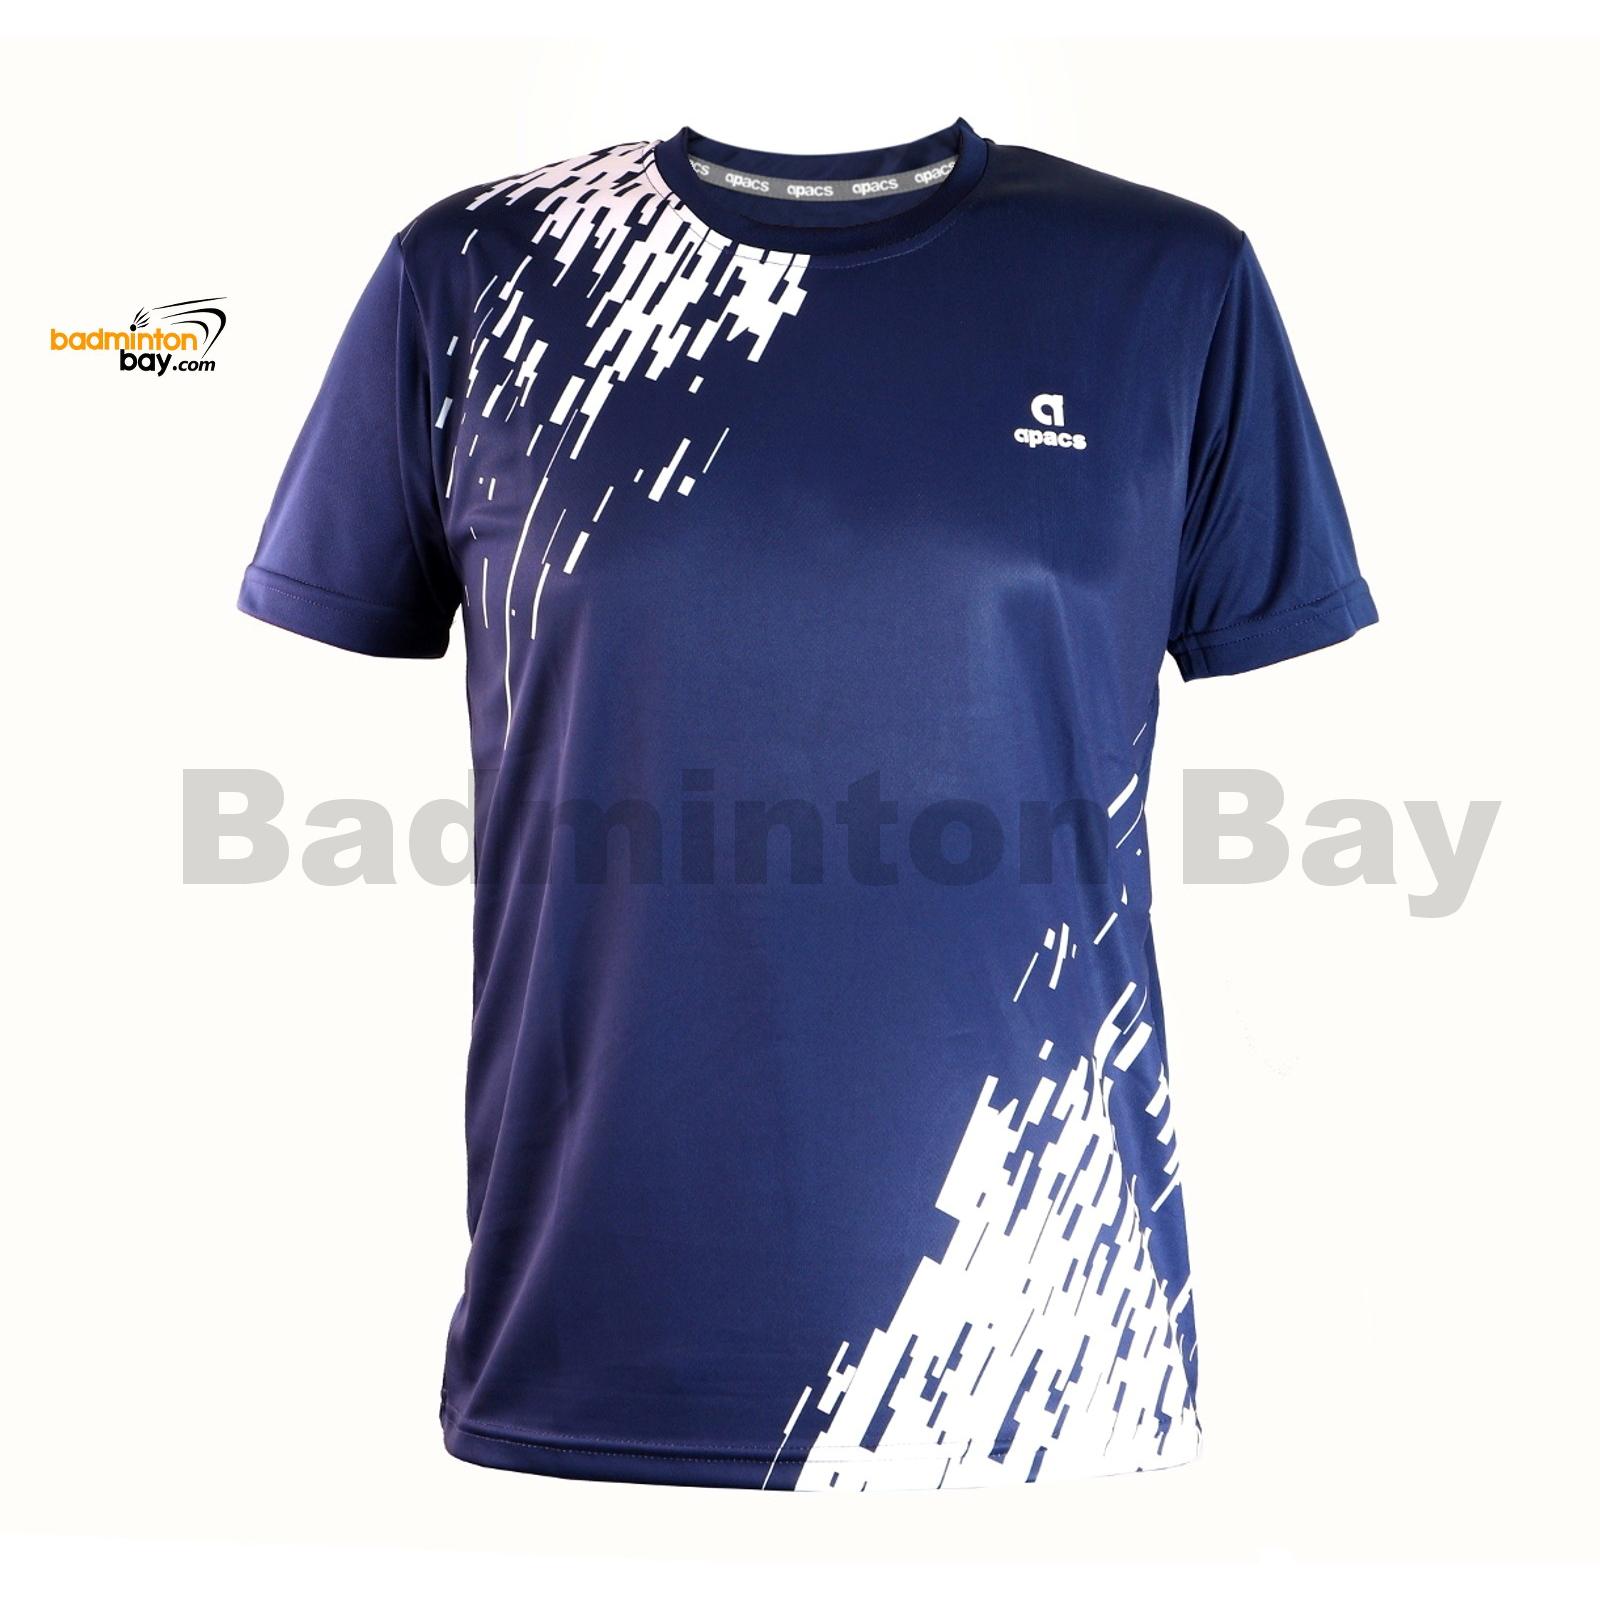 AP-3257 Navy Blue T-Shirt Quick Dry 